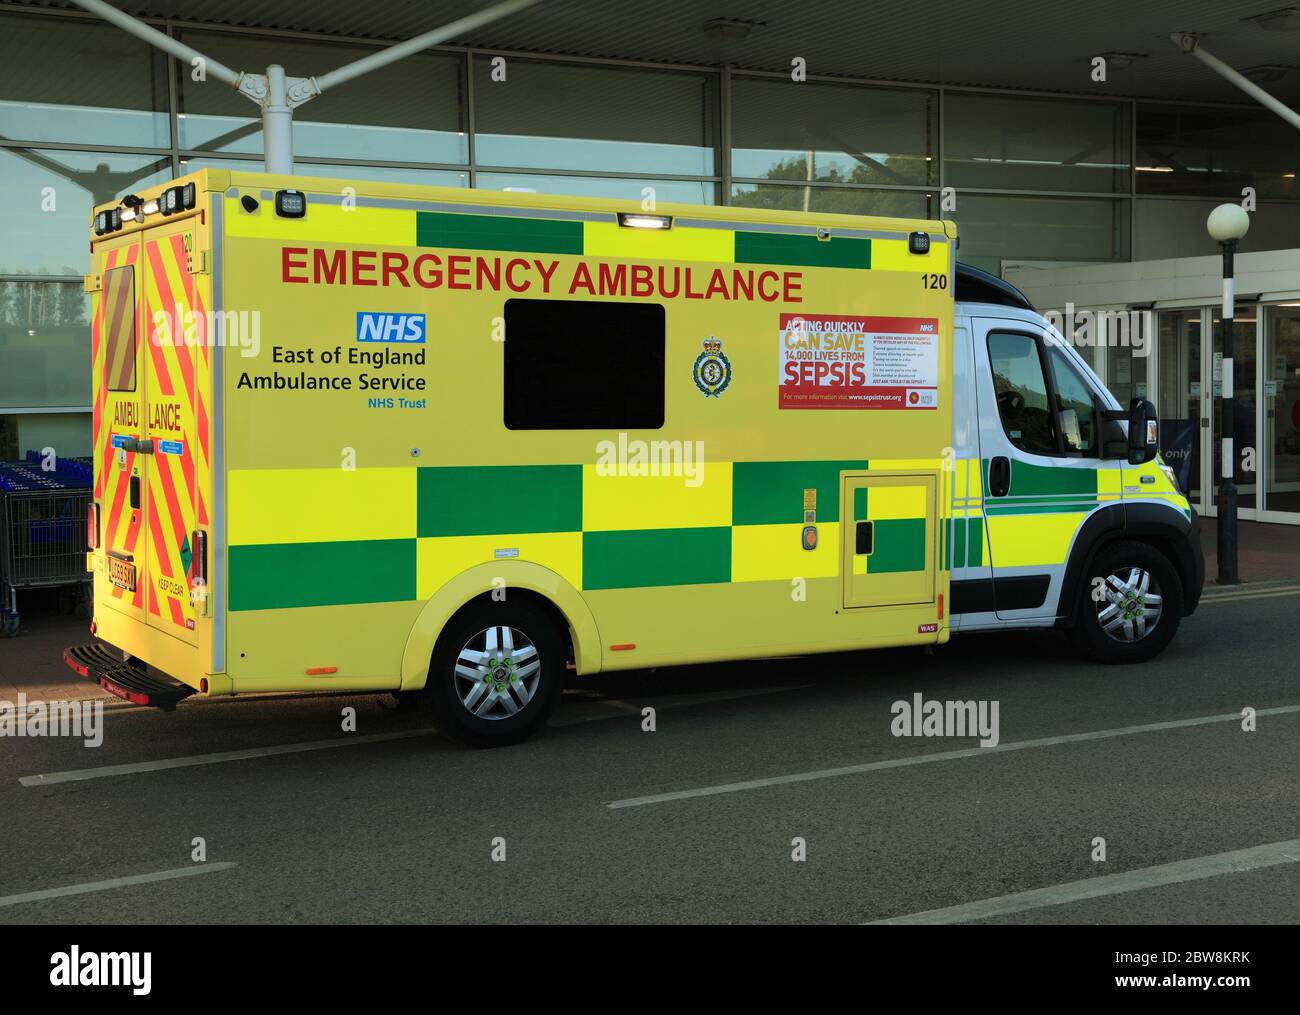 Emergency Ambulance, NHS, East of England Ambulance Service, Norfolk, England, ambulances Stock Photo